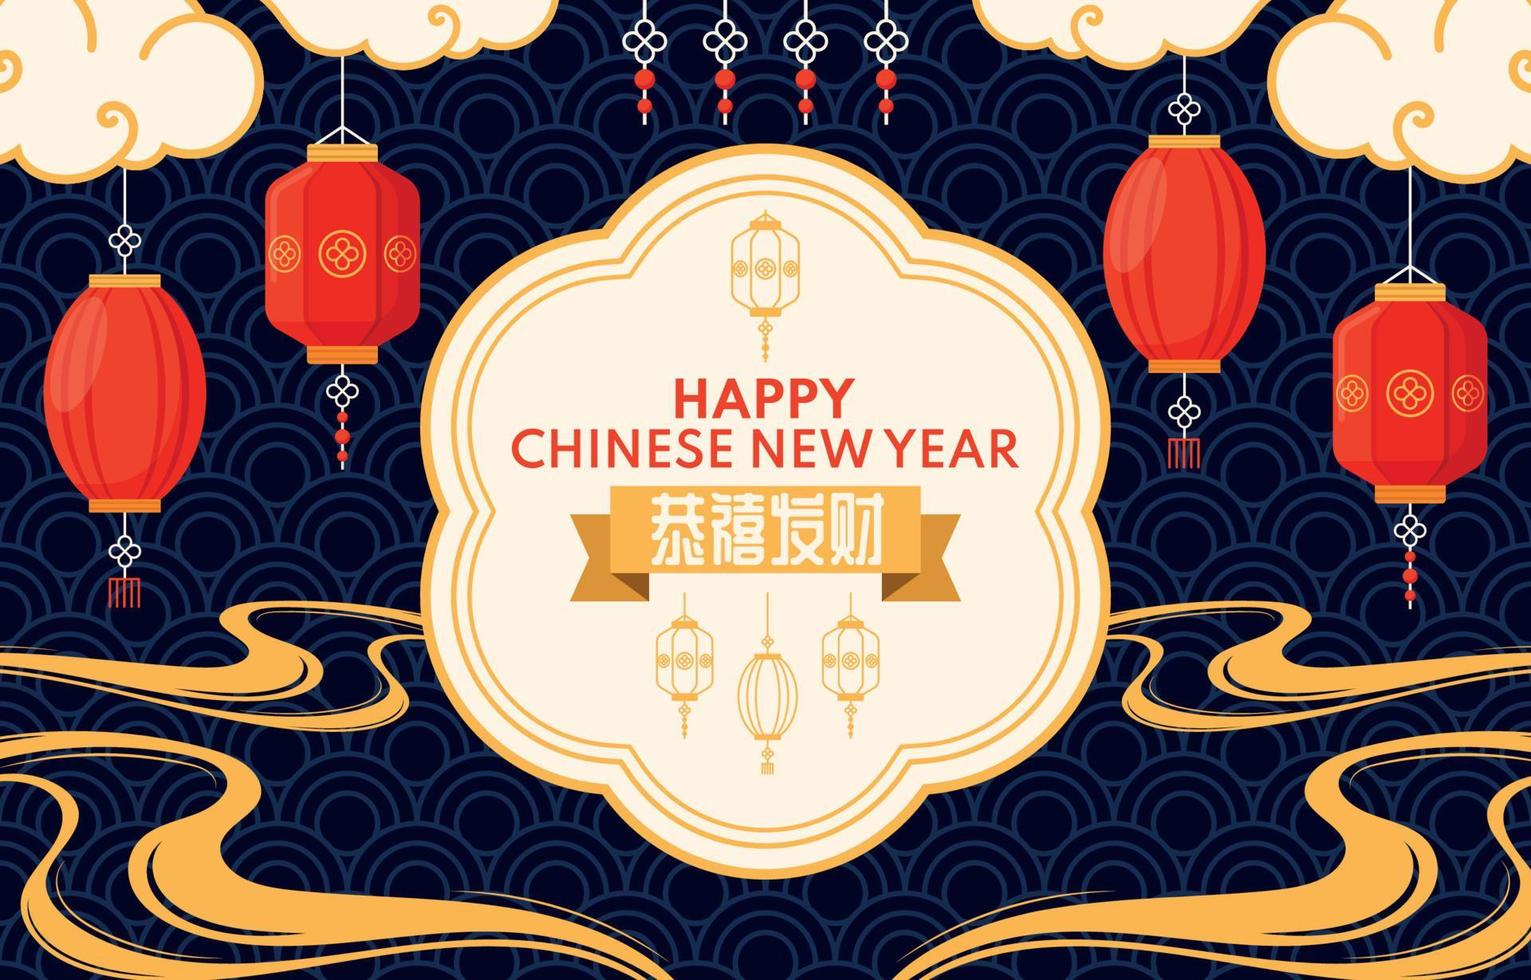 enfeite de ano novo chinês com lanterna e nuvem vetor